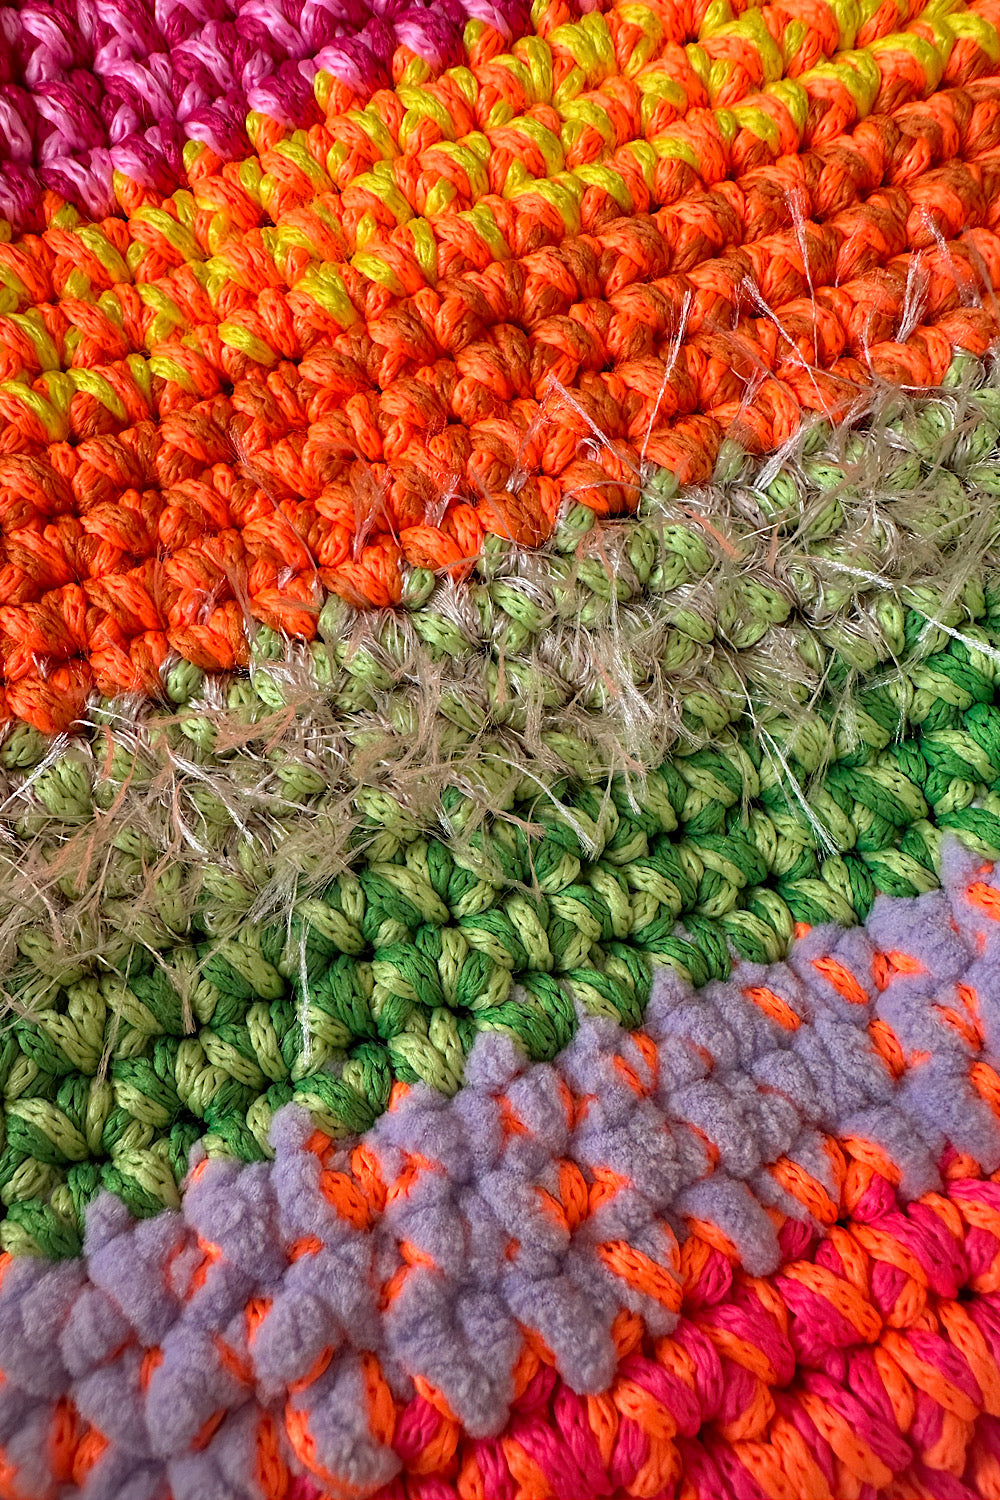 Hand crafted crochet-knit handbag 2